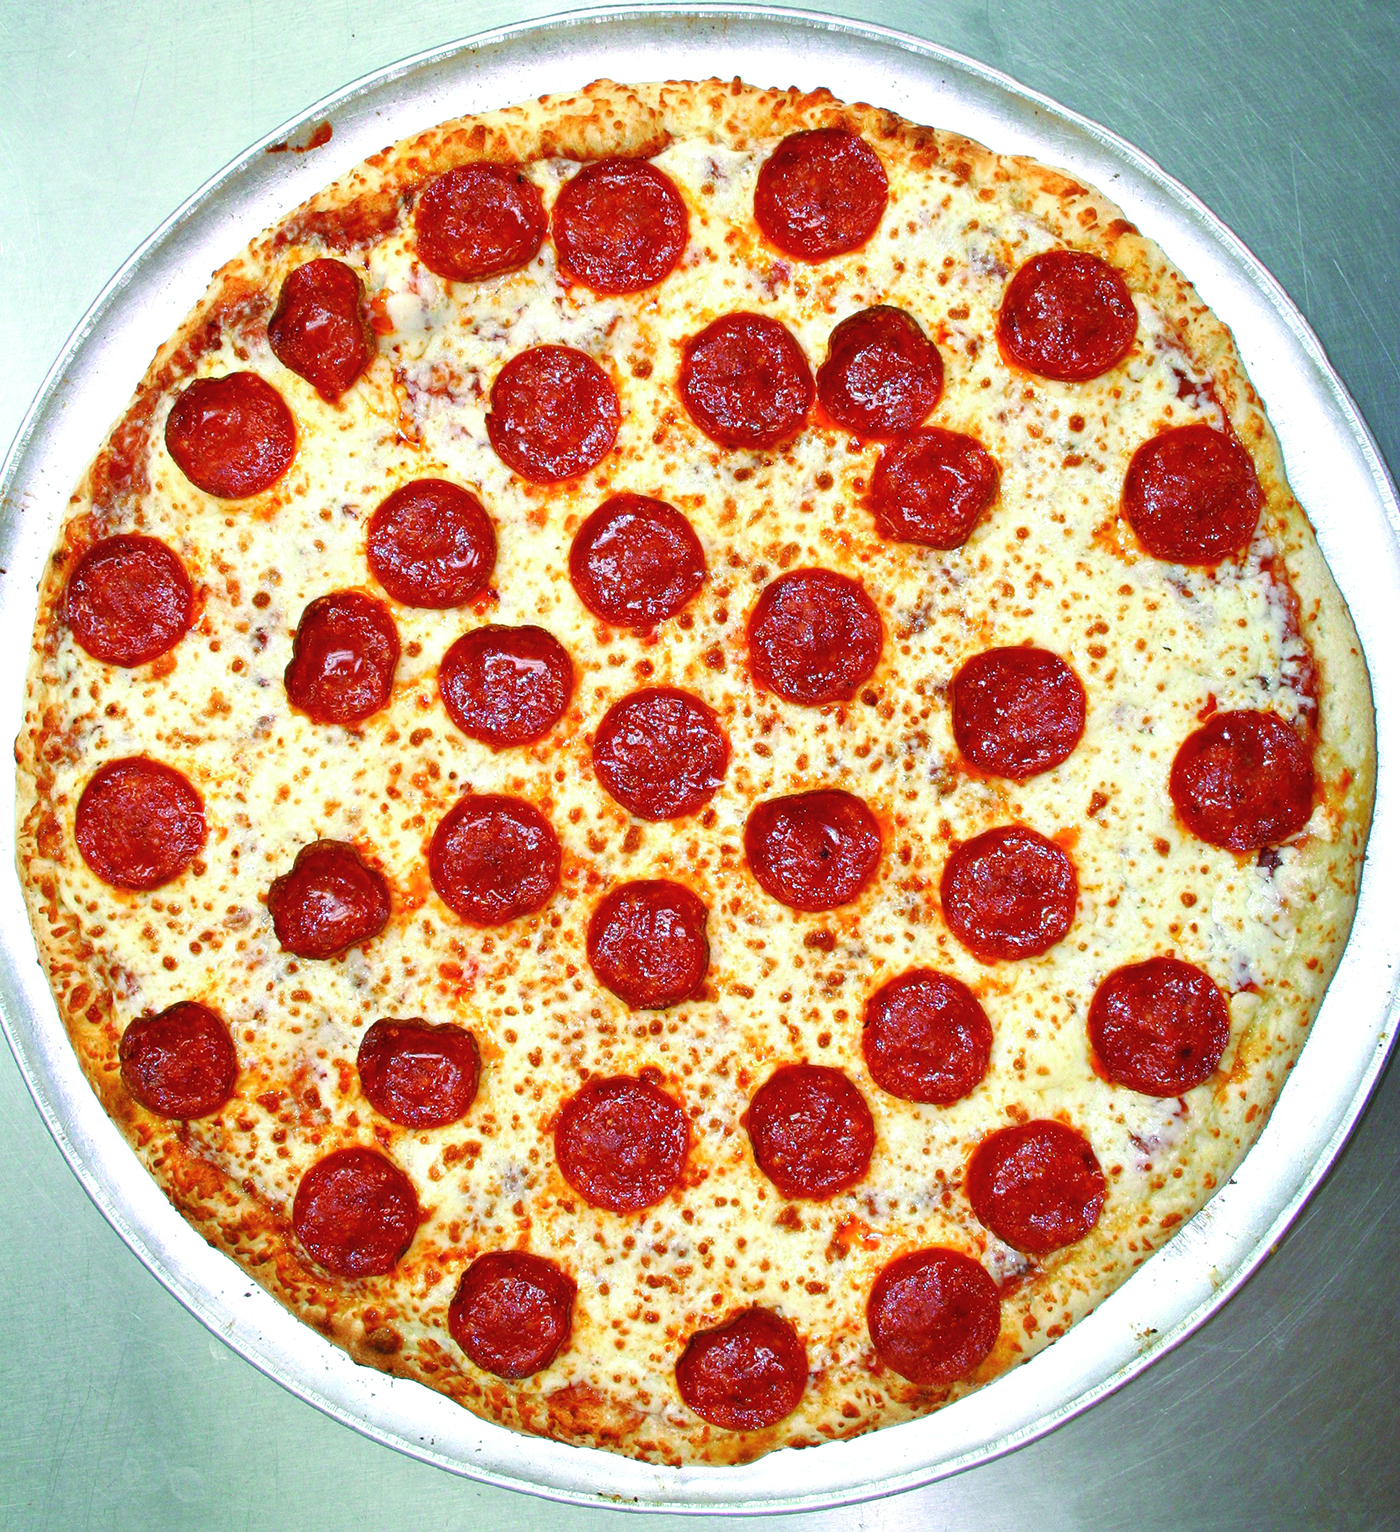 snappy tomato pizza covington ky